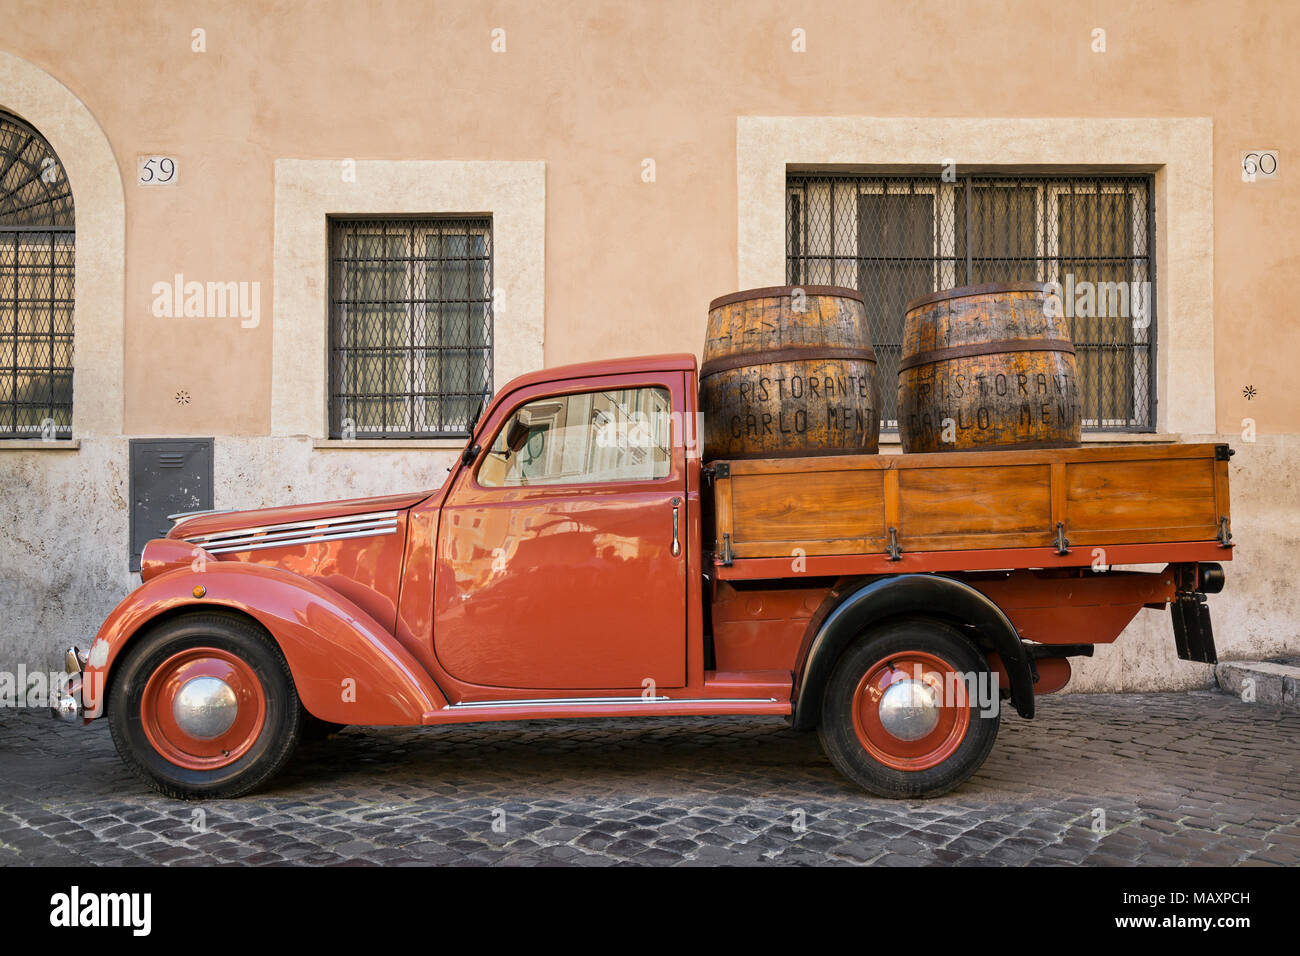 Une vieille Fiat rouge 1100 van lit plat avec des tonneaux de vin en bois à l'arrière, stationné à l'extérieur de Ristorante Carlo Menta à Rome, Italie. Banque D'Images